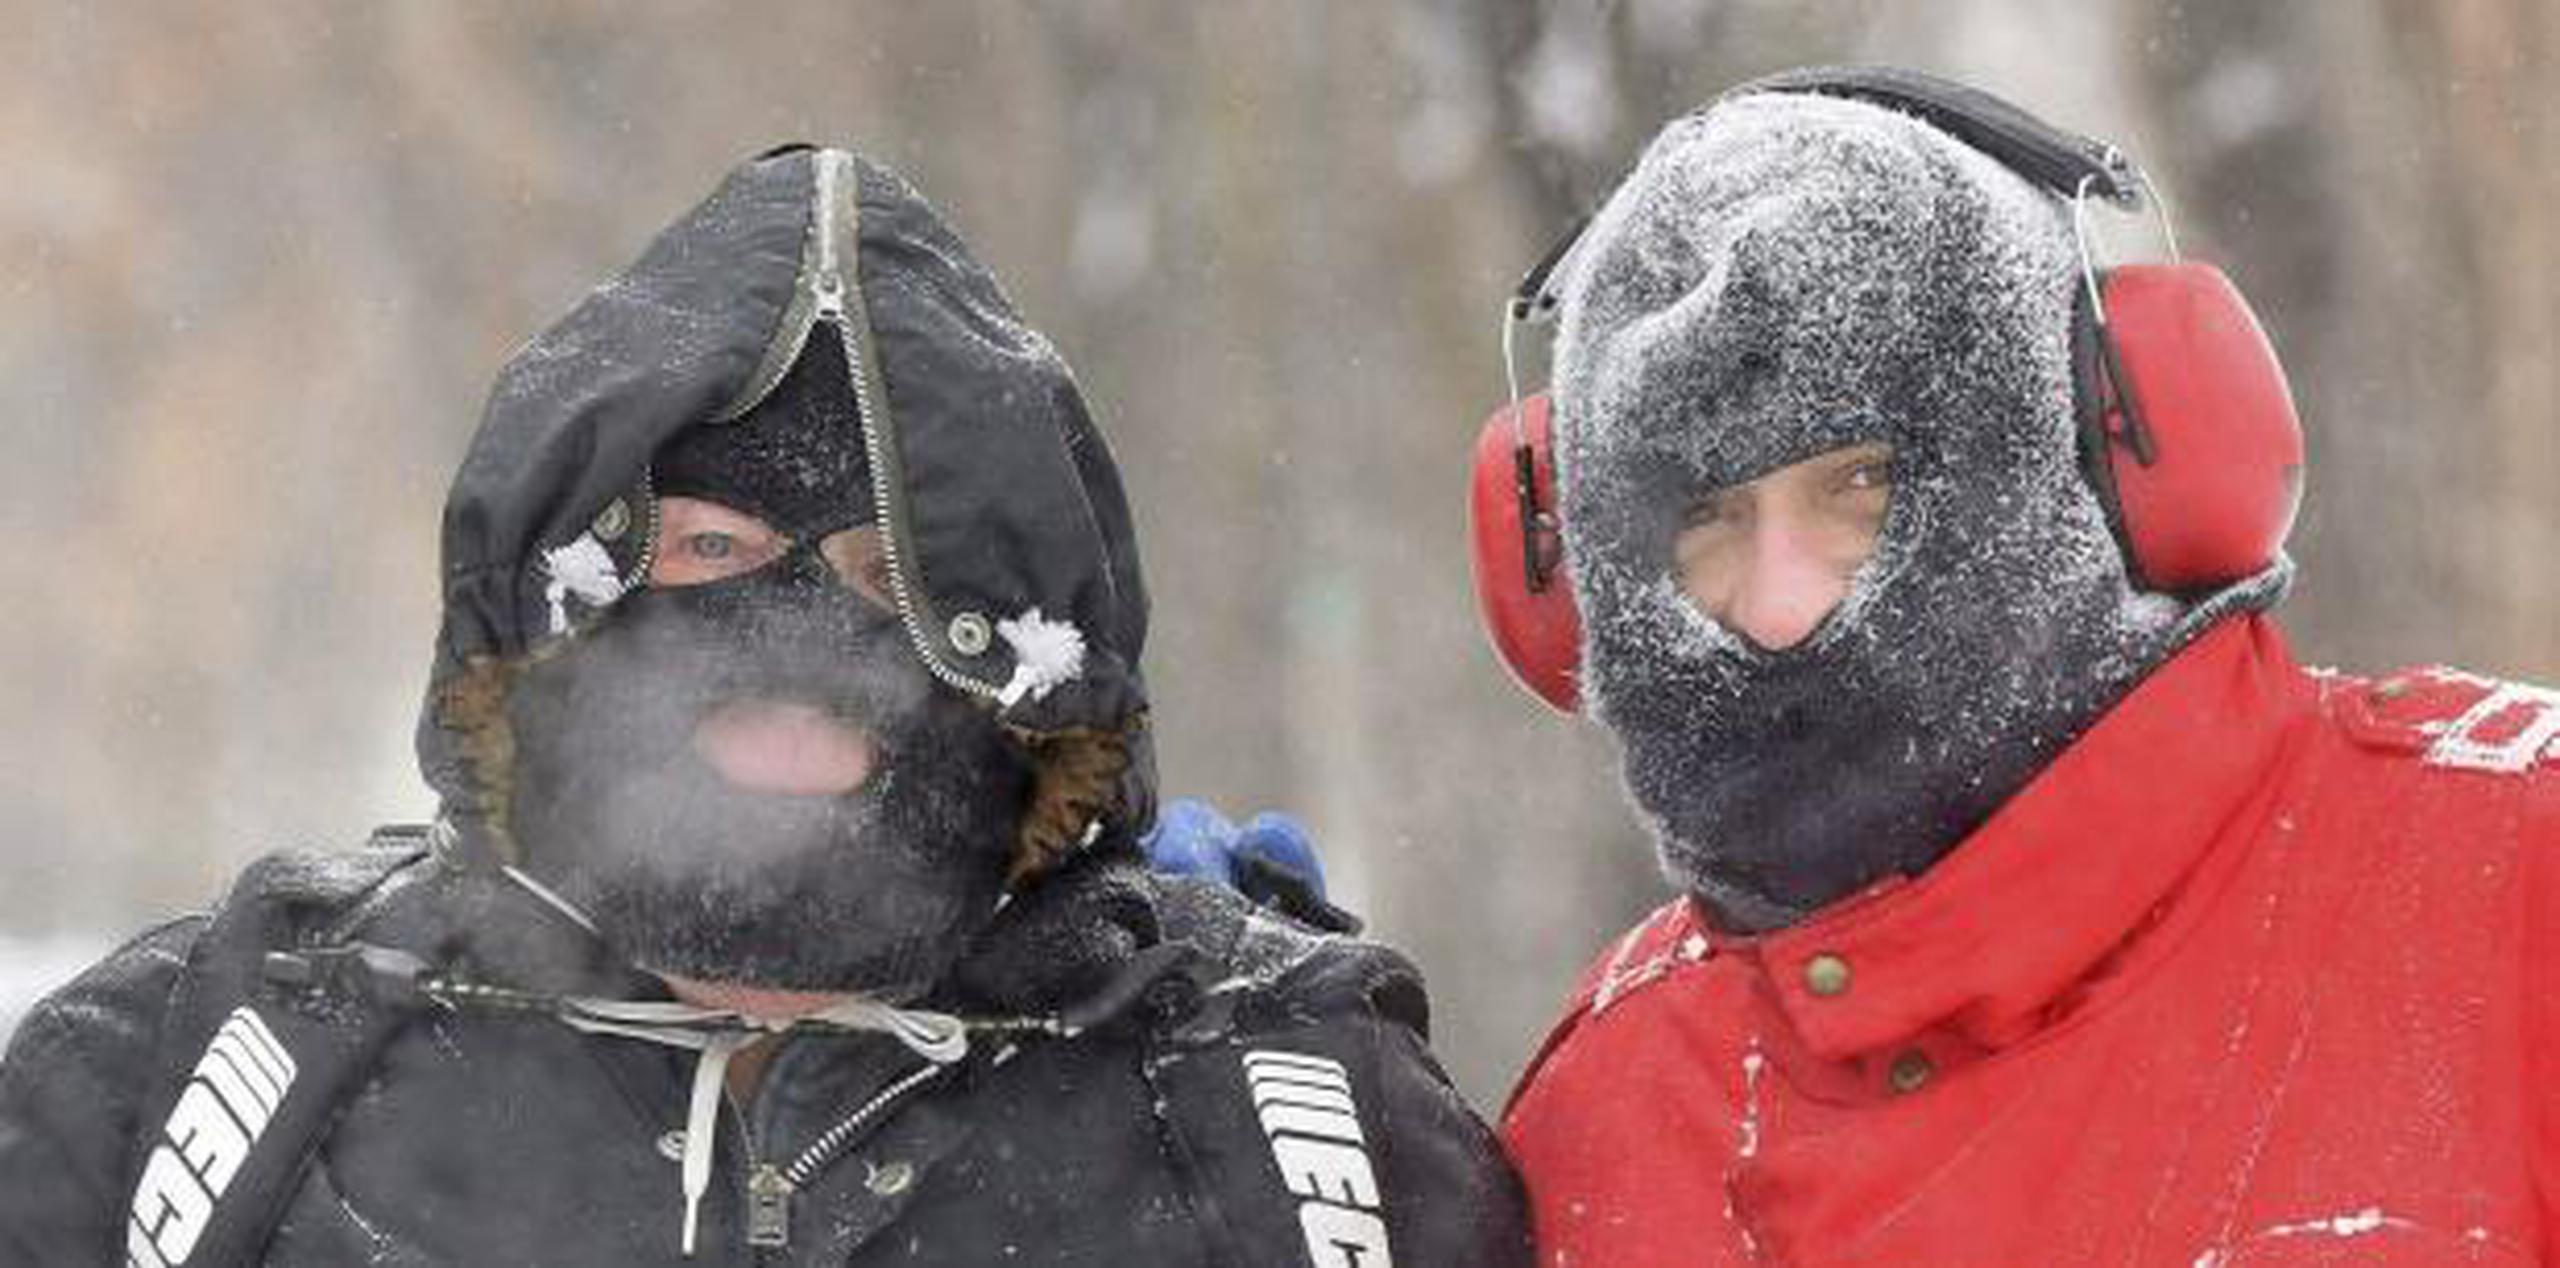 John y Johnny Nagel, padre e hijo, se vistieron para soportar temperaturas frías mientras limpiaban nieve fuera de su casa en Bismarck, Dakota del Norte. (Tom Stromme / The Bismarck Tribune vía AP)